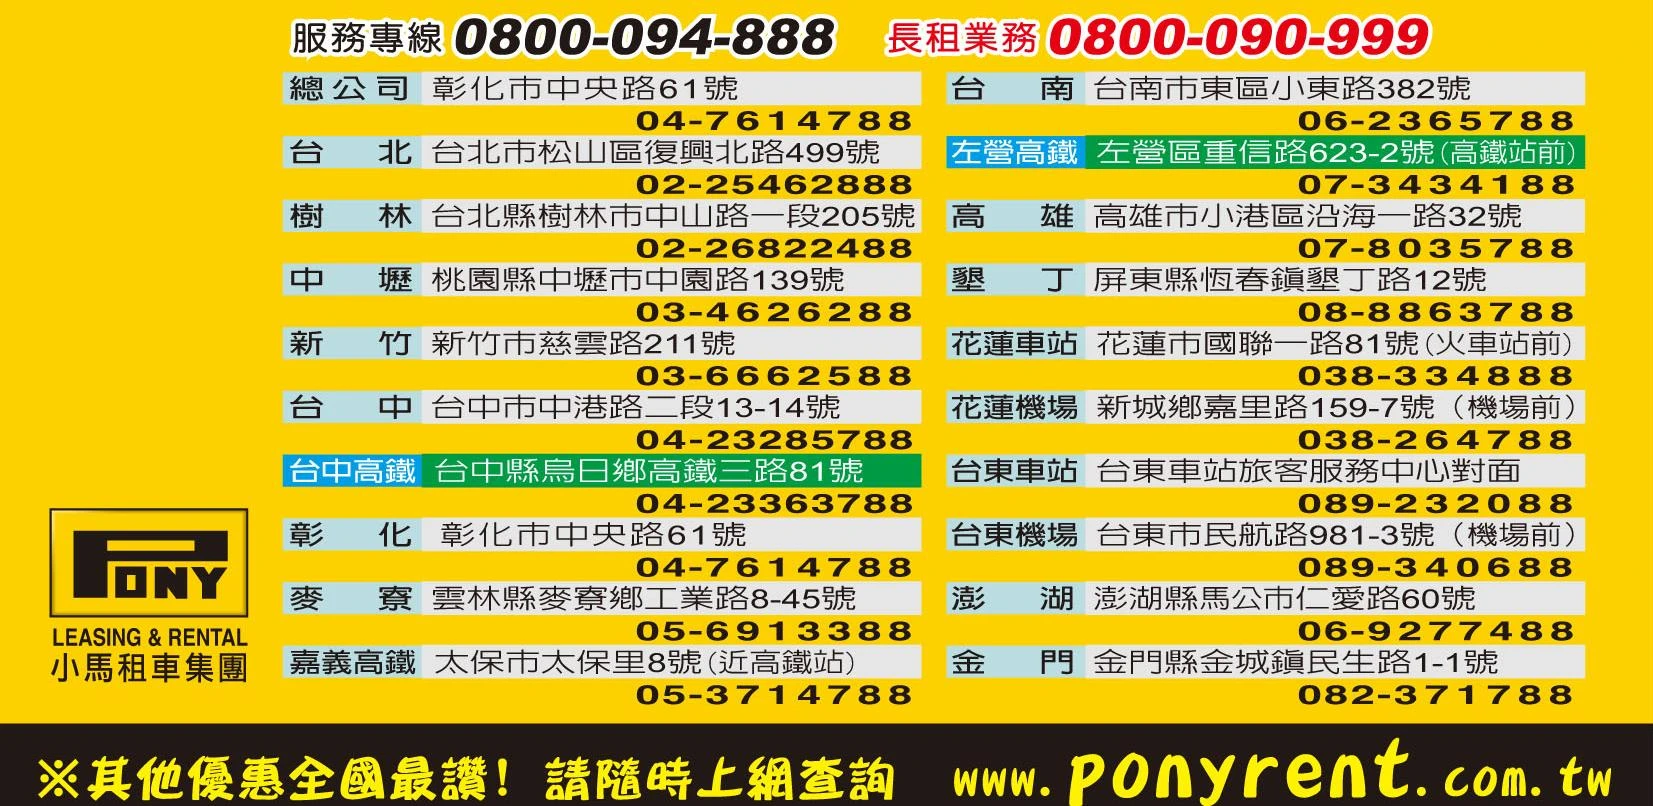 台灣最大租車網.全國據點一覽表